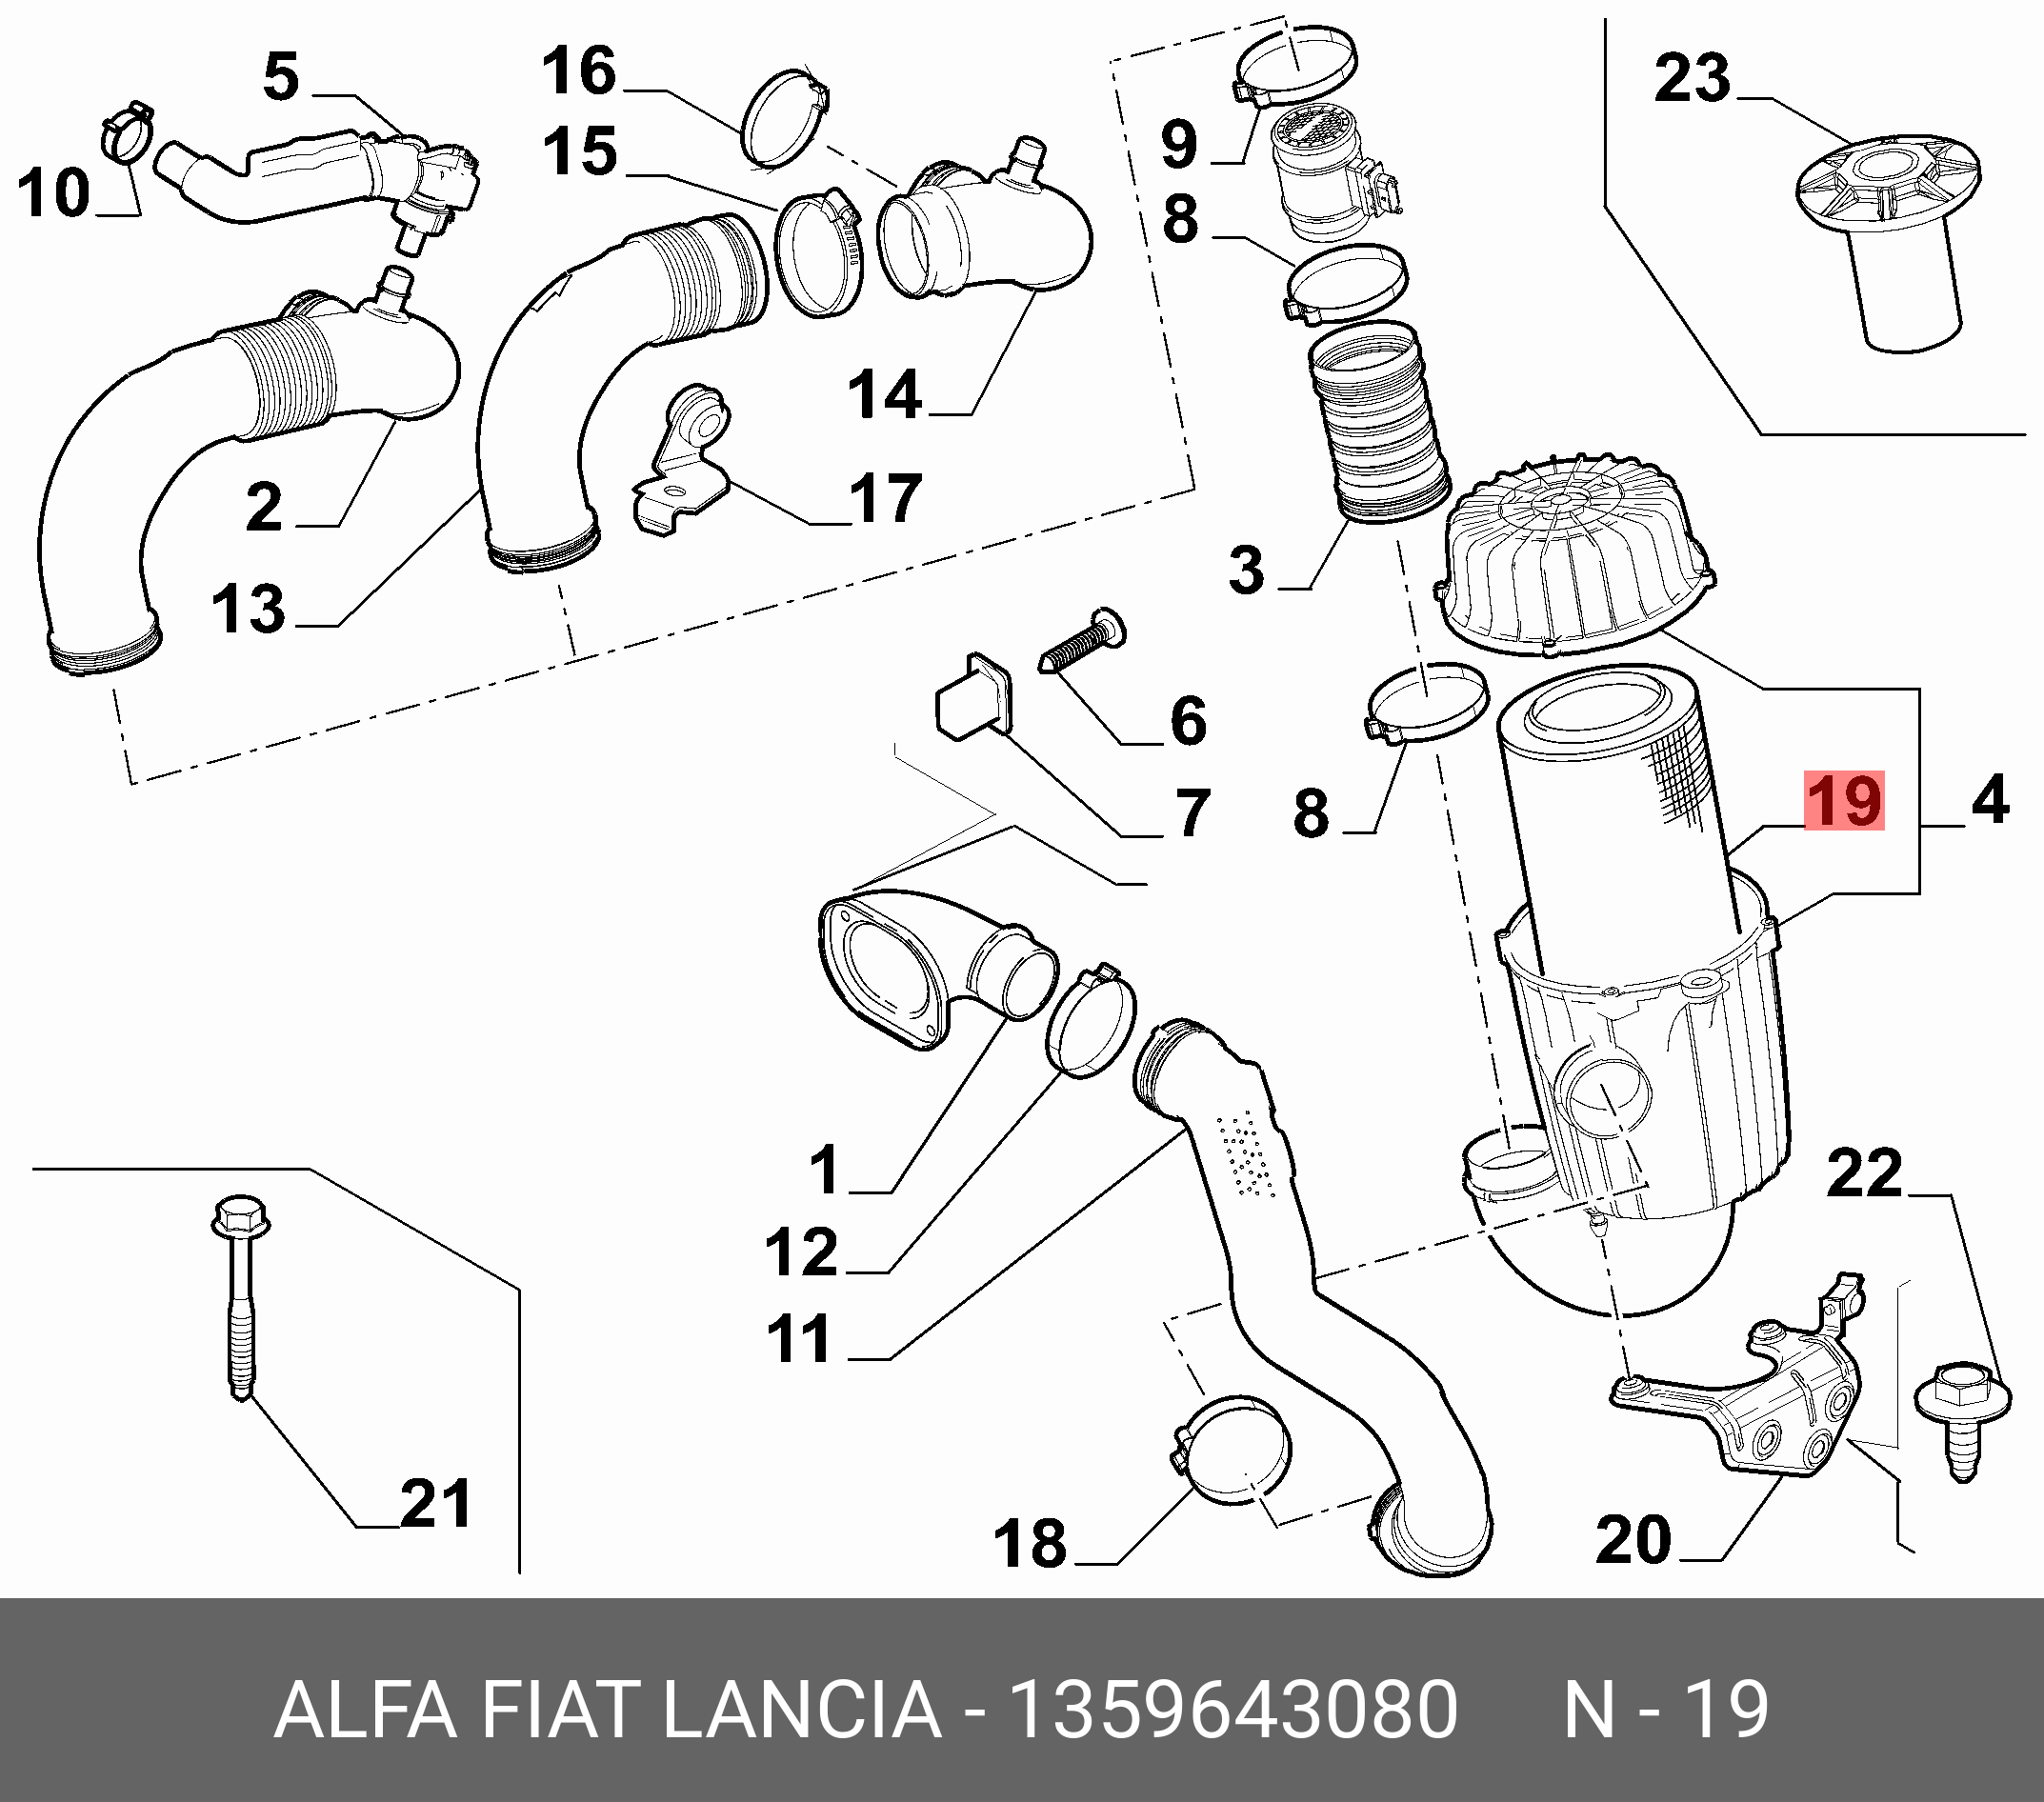 Фильтр воздушный - Fiat/Alfa/Lancia 1 359 643 080